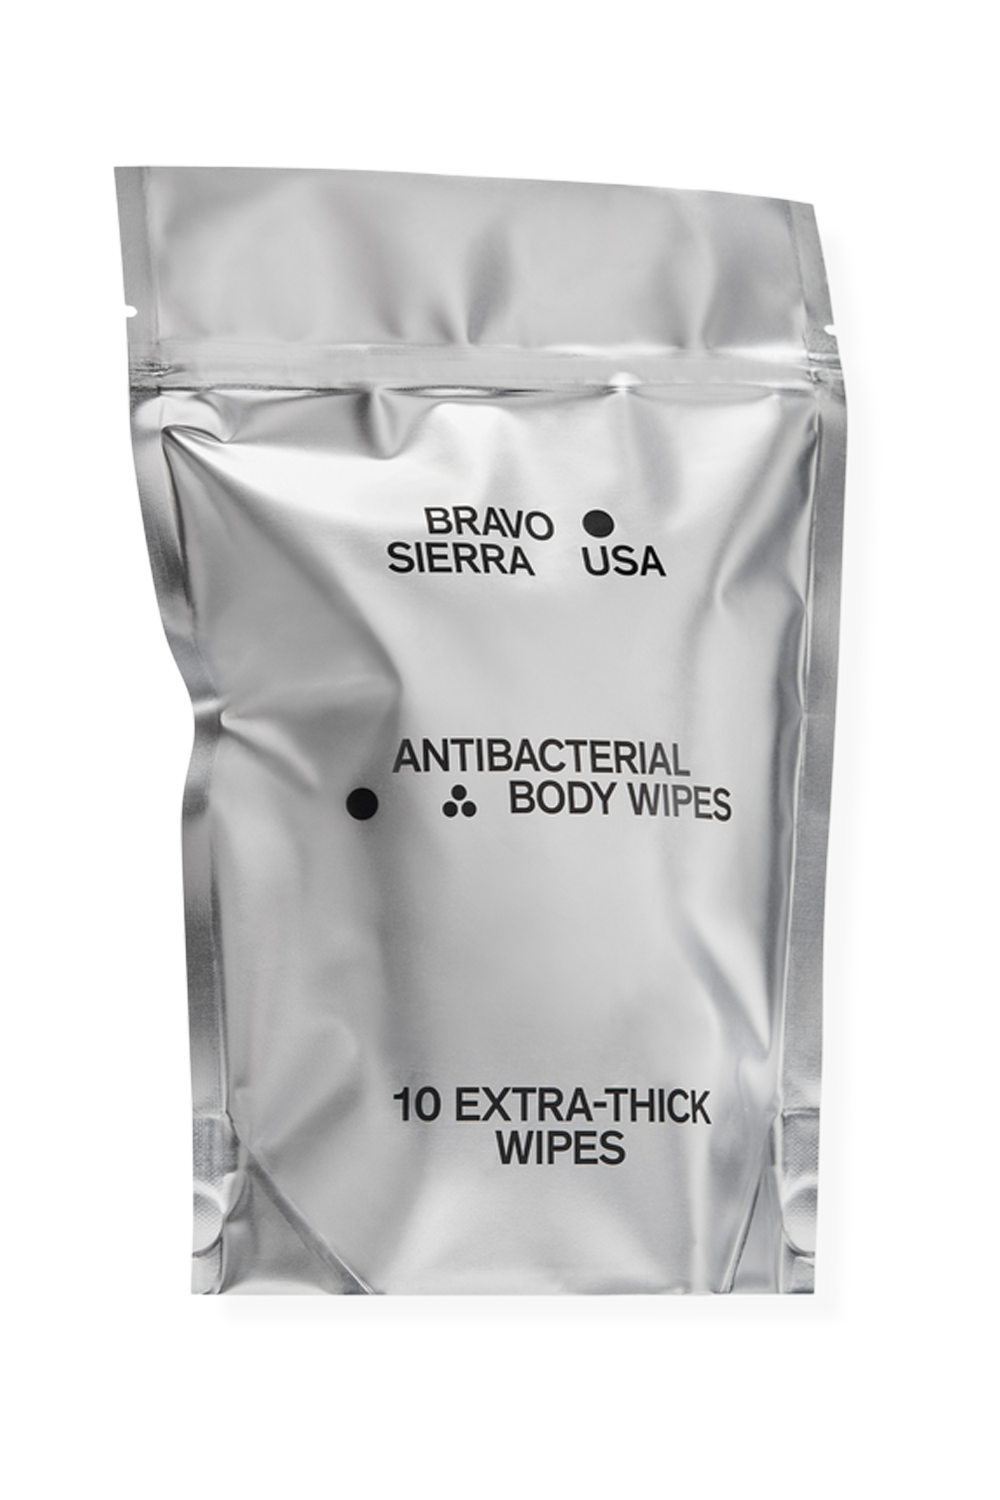 Bravo Sierra Antibacterial Body Wipes